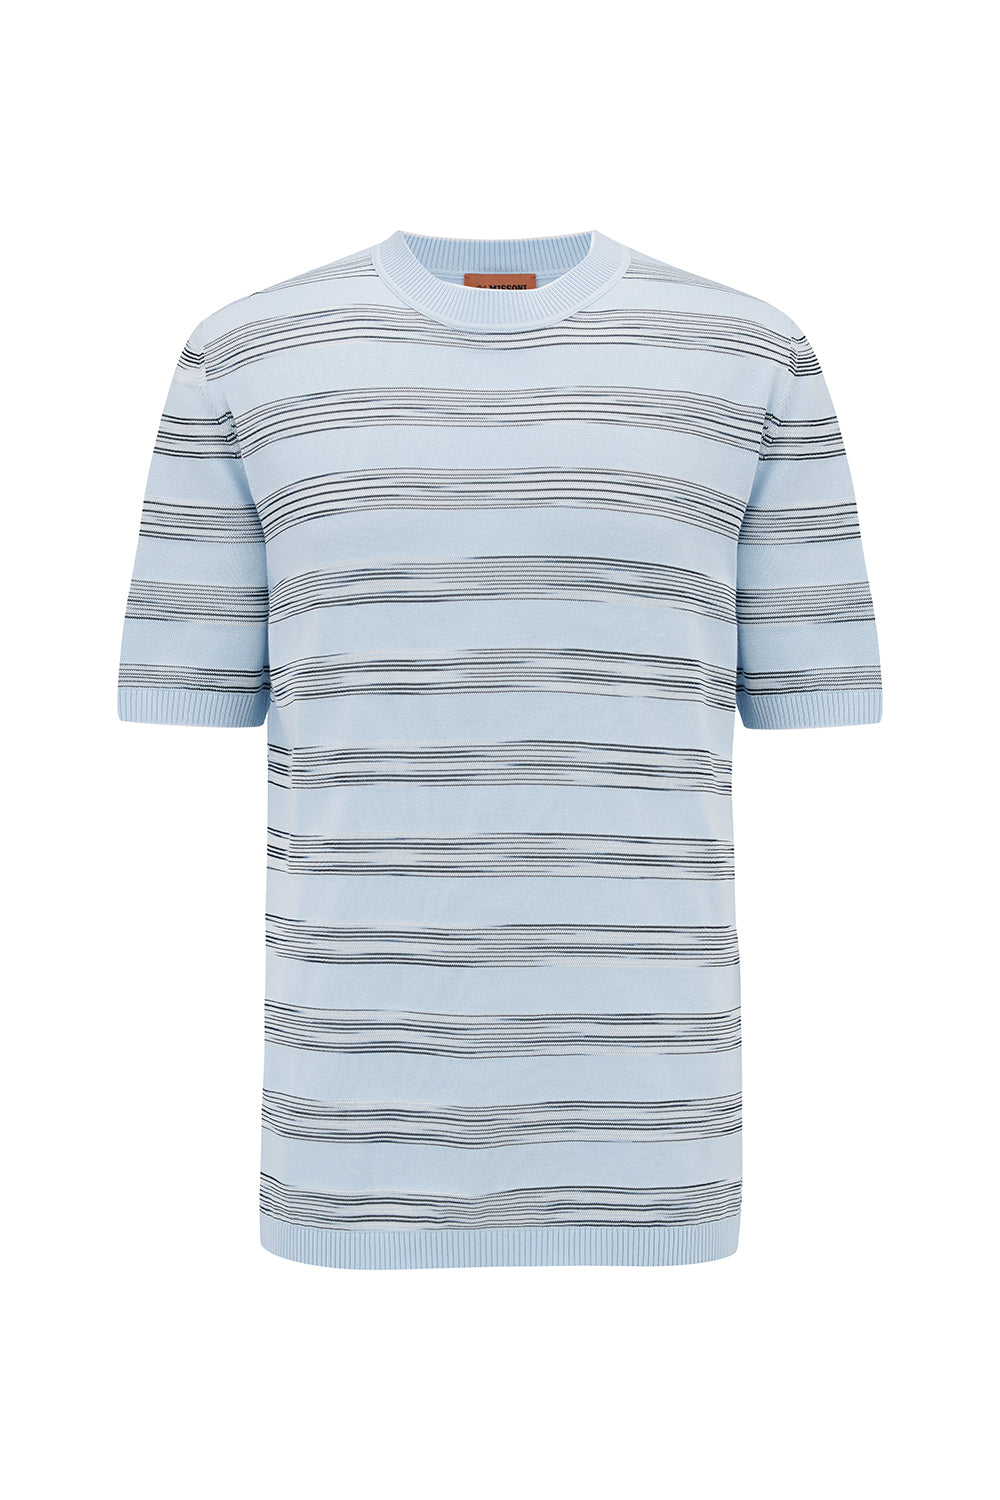 Missoni Men’s Striped Crew-Neck T-shirt Sky Blue - Front View